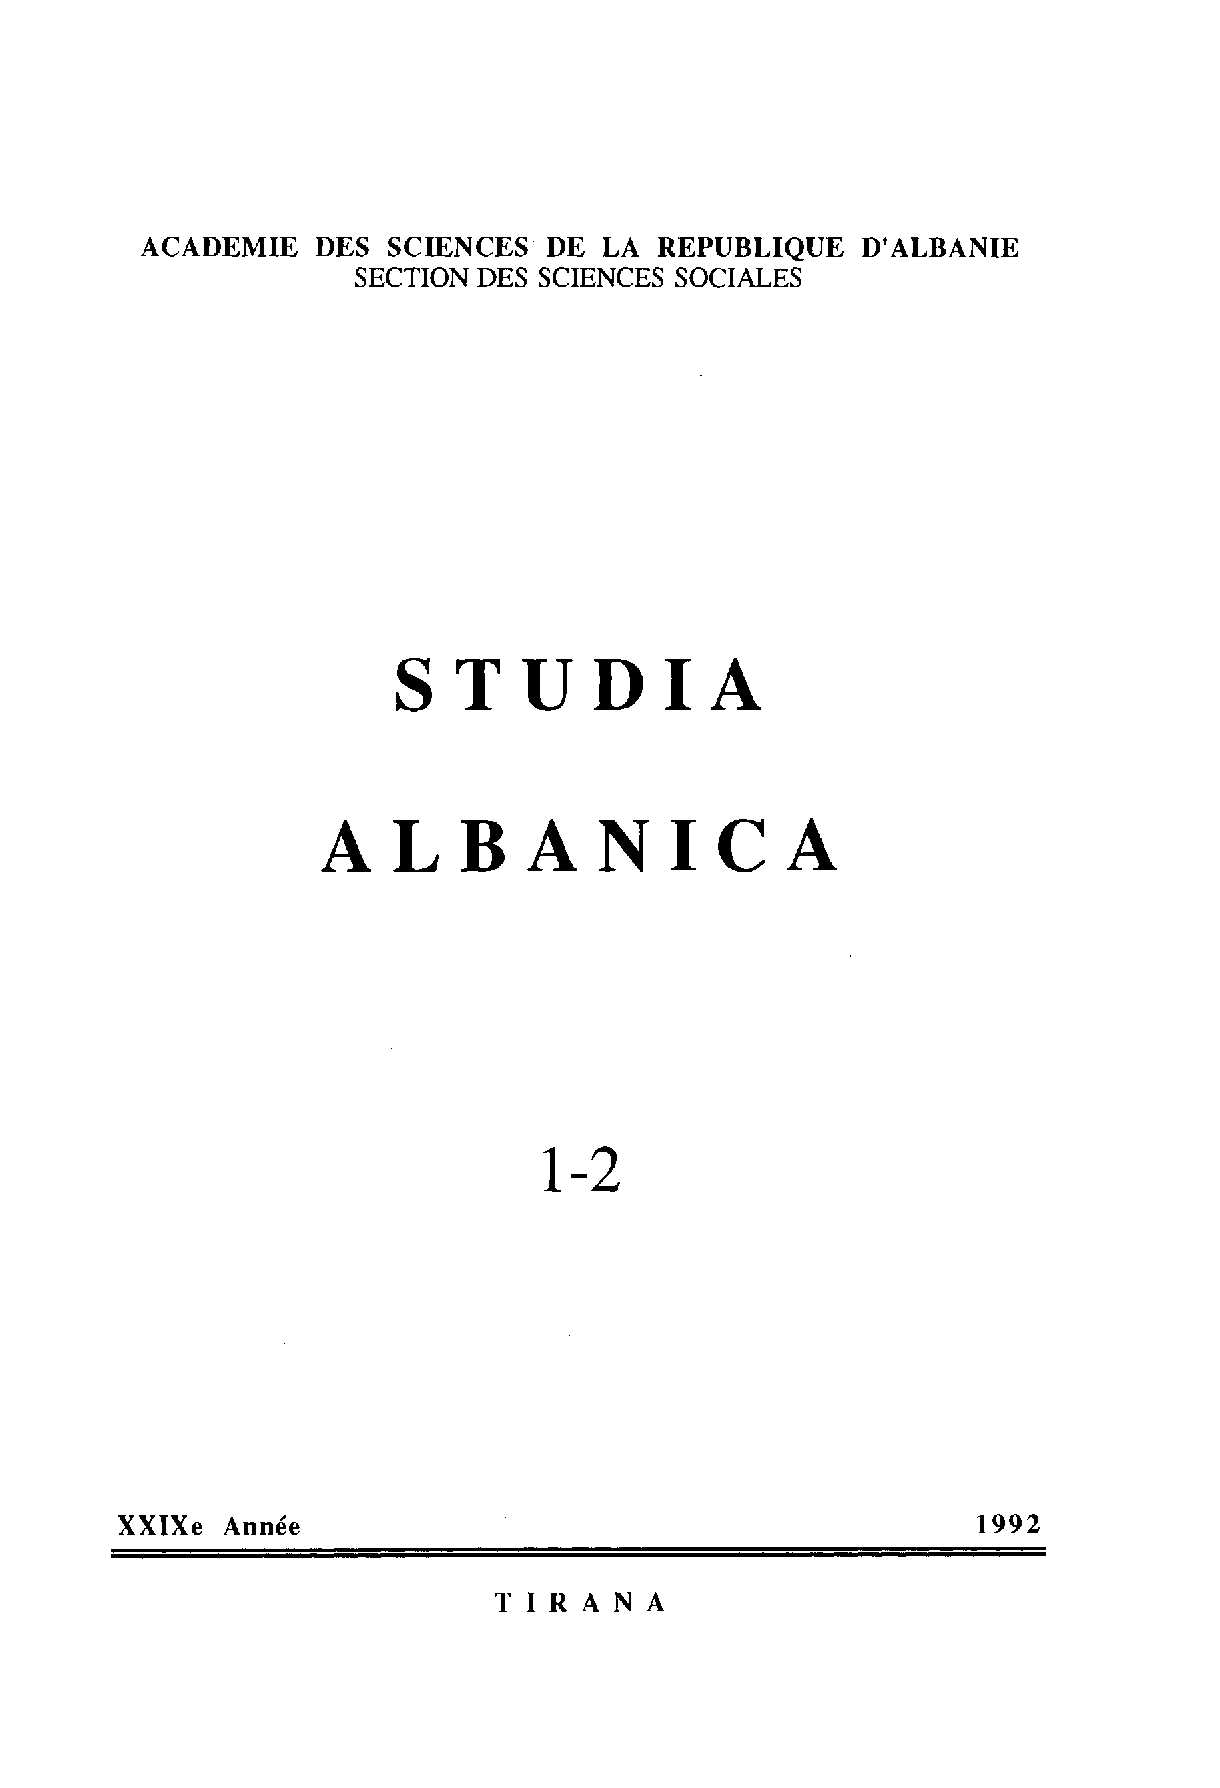 Franc Miklošič's Main Contributions in Albanology Cover Image